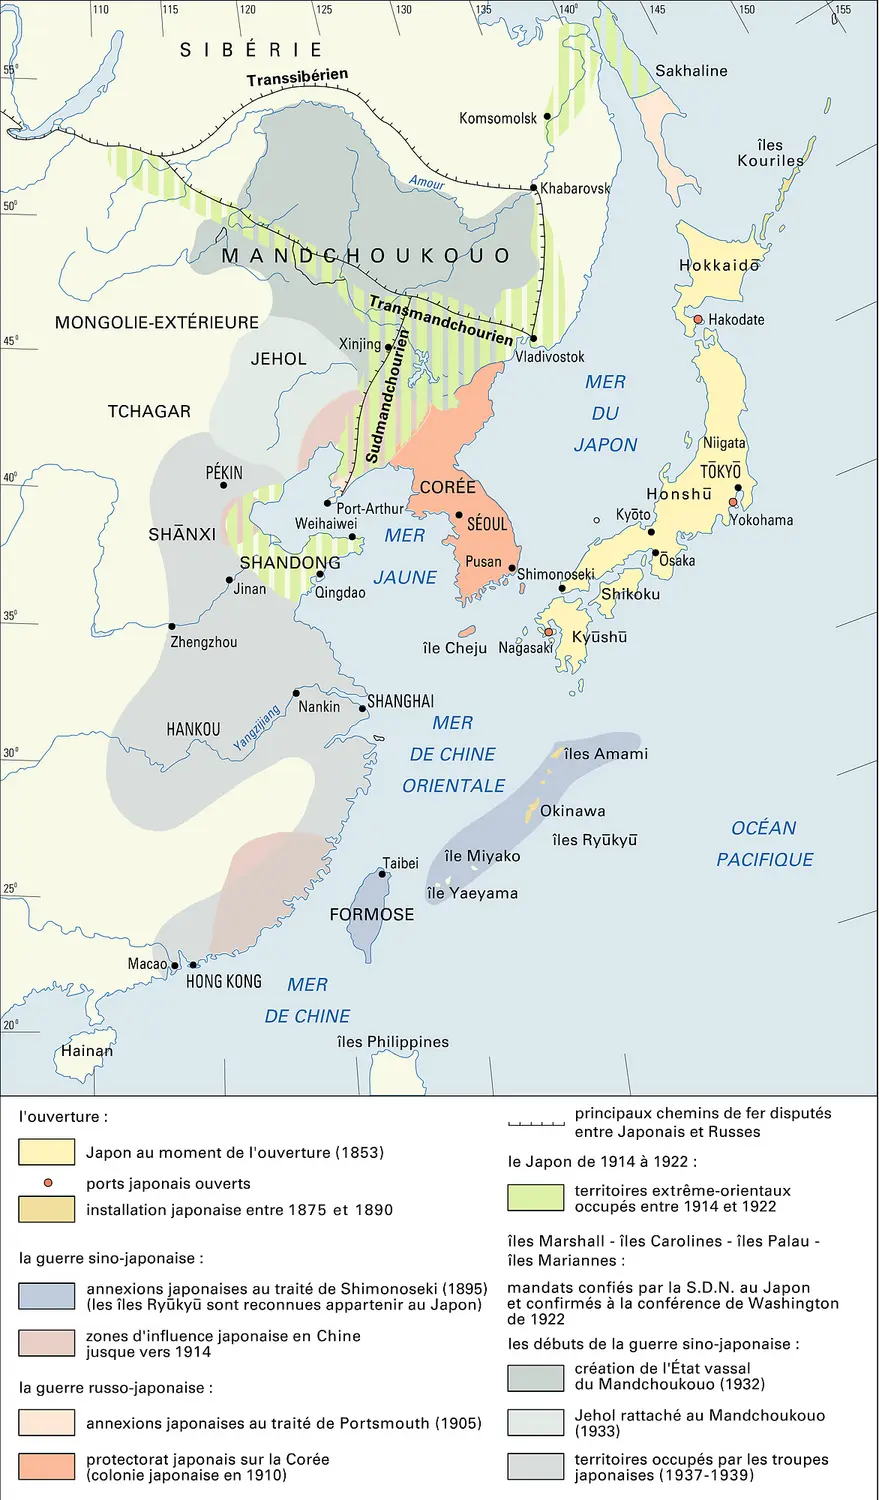 Japon, expansion de 1853 à 1937